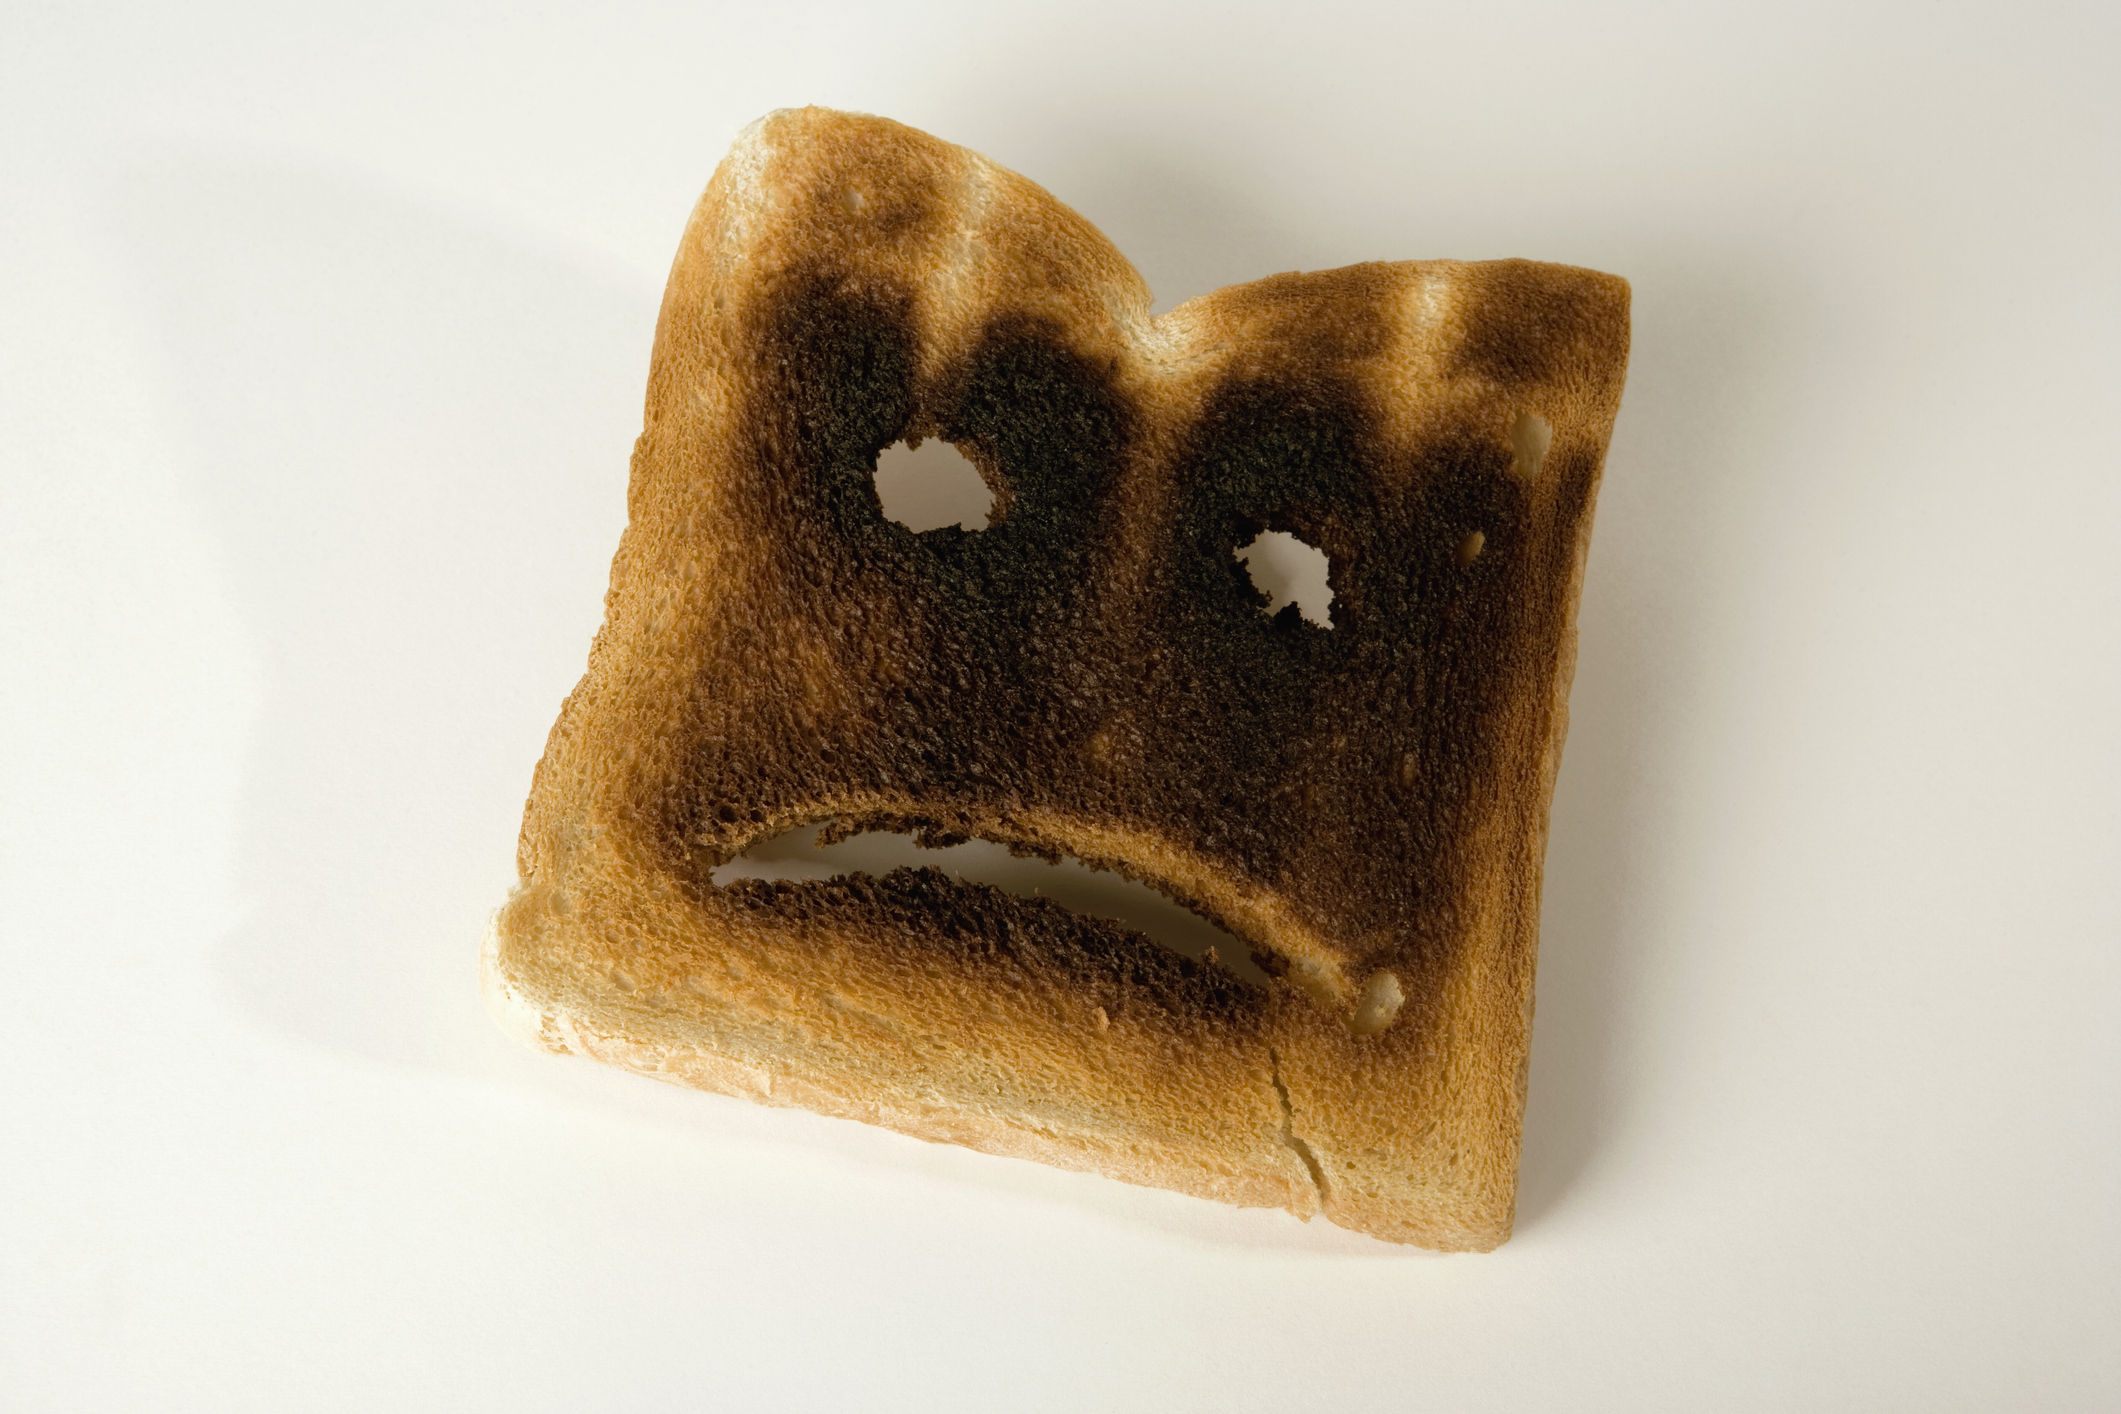 En skiva bränd rostat bröd med ett sorgset ansikte;  arbetsrättsliga misstag